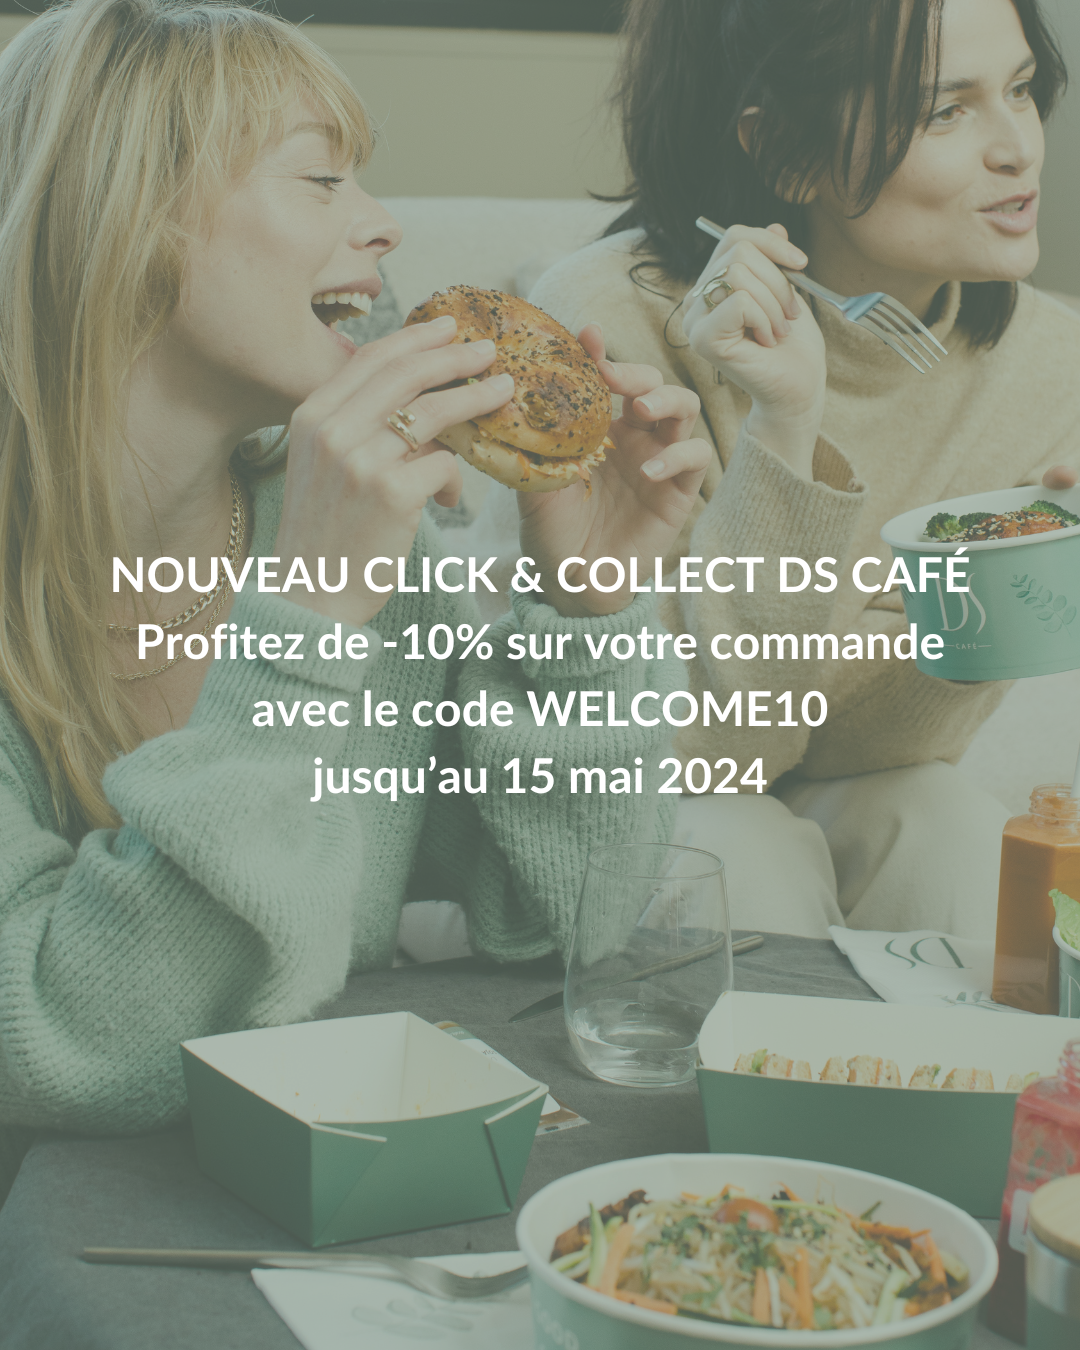 NOUVEAU CLICK & COLLECT DS CAFÉ Profitez de -10% sur votre commande avec le code WELCOME10 jusqu’au 15 mai 2024